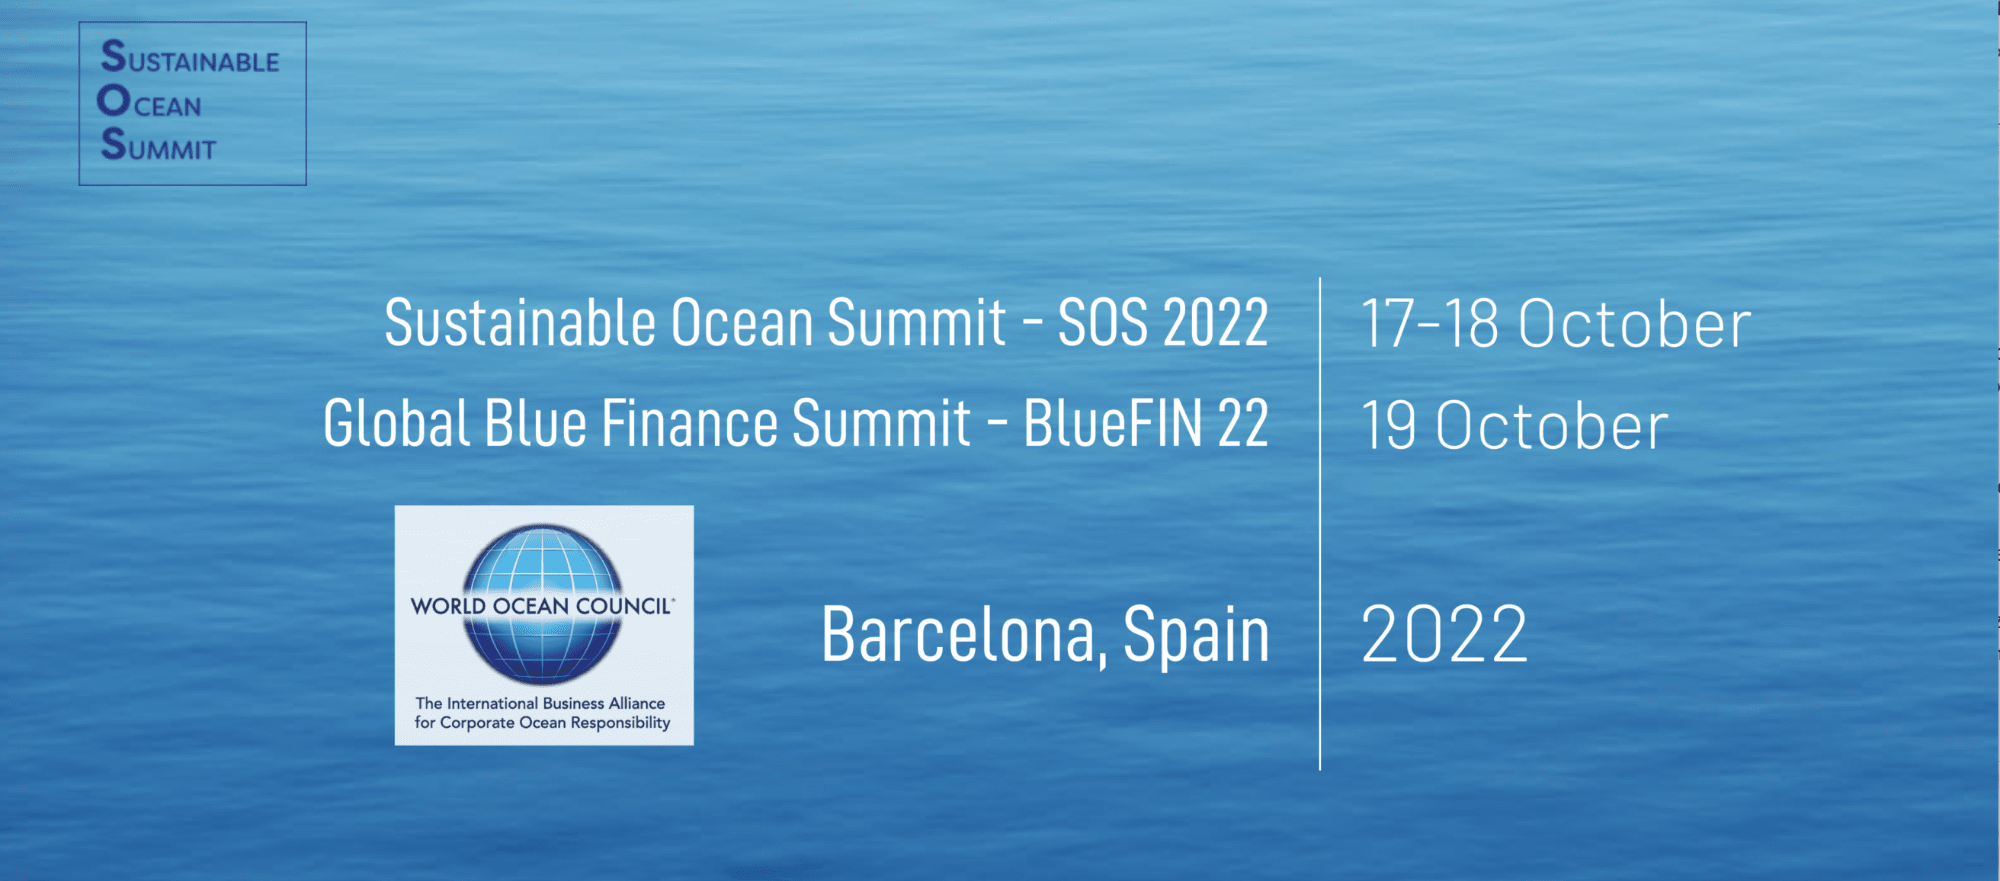 sustainable ocean summit 2022 poster-2